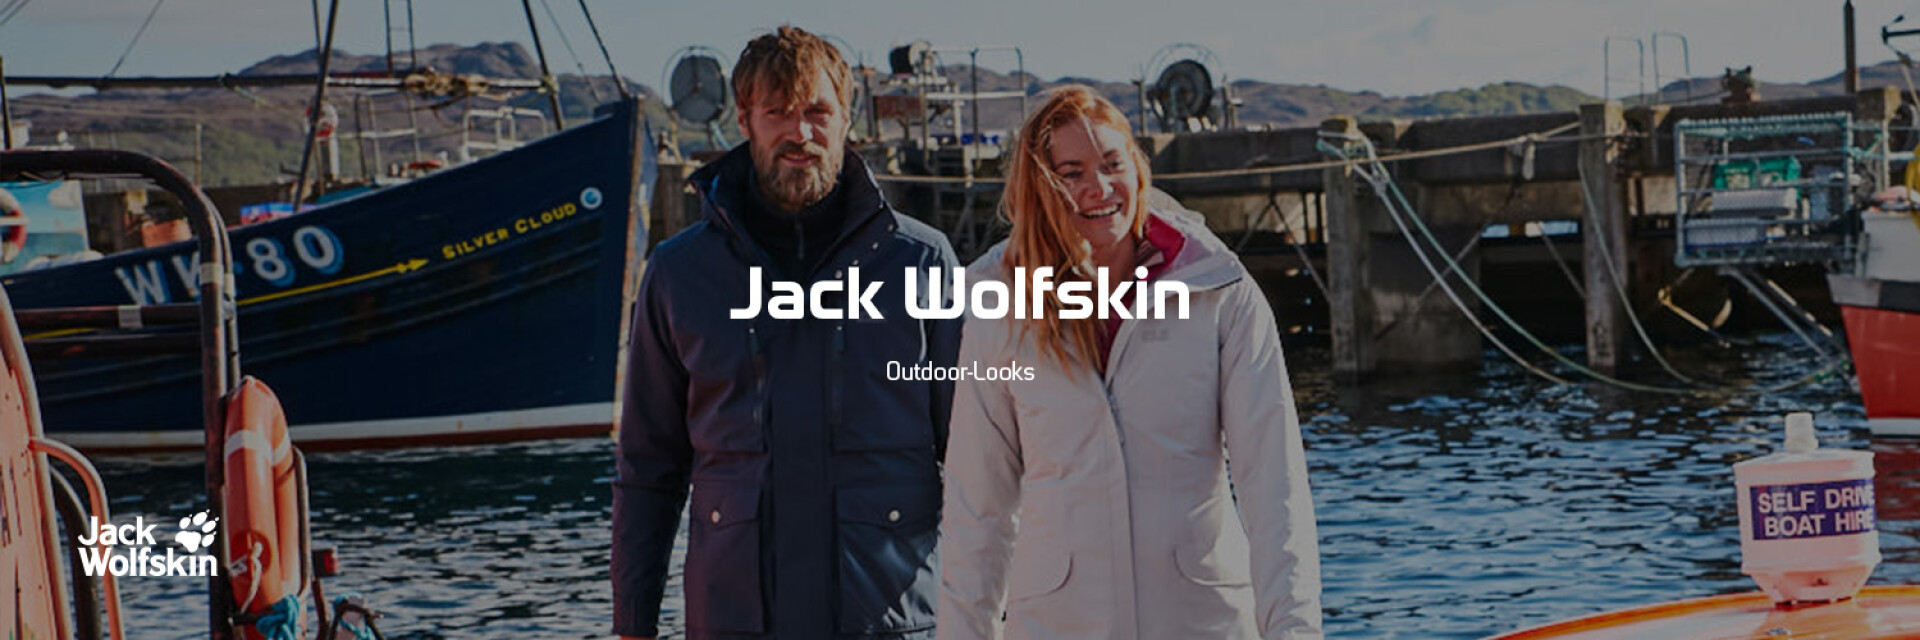 Jack Wolfskin Outdoor-Looks